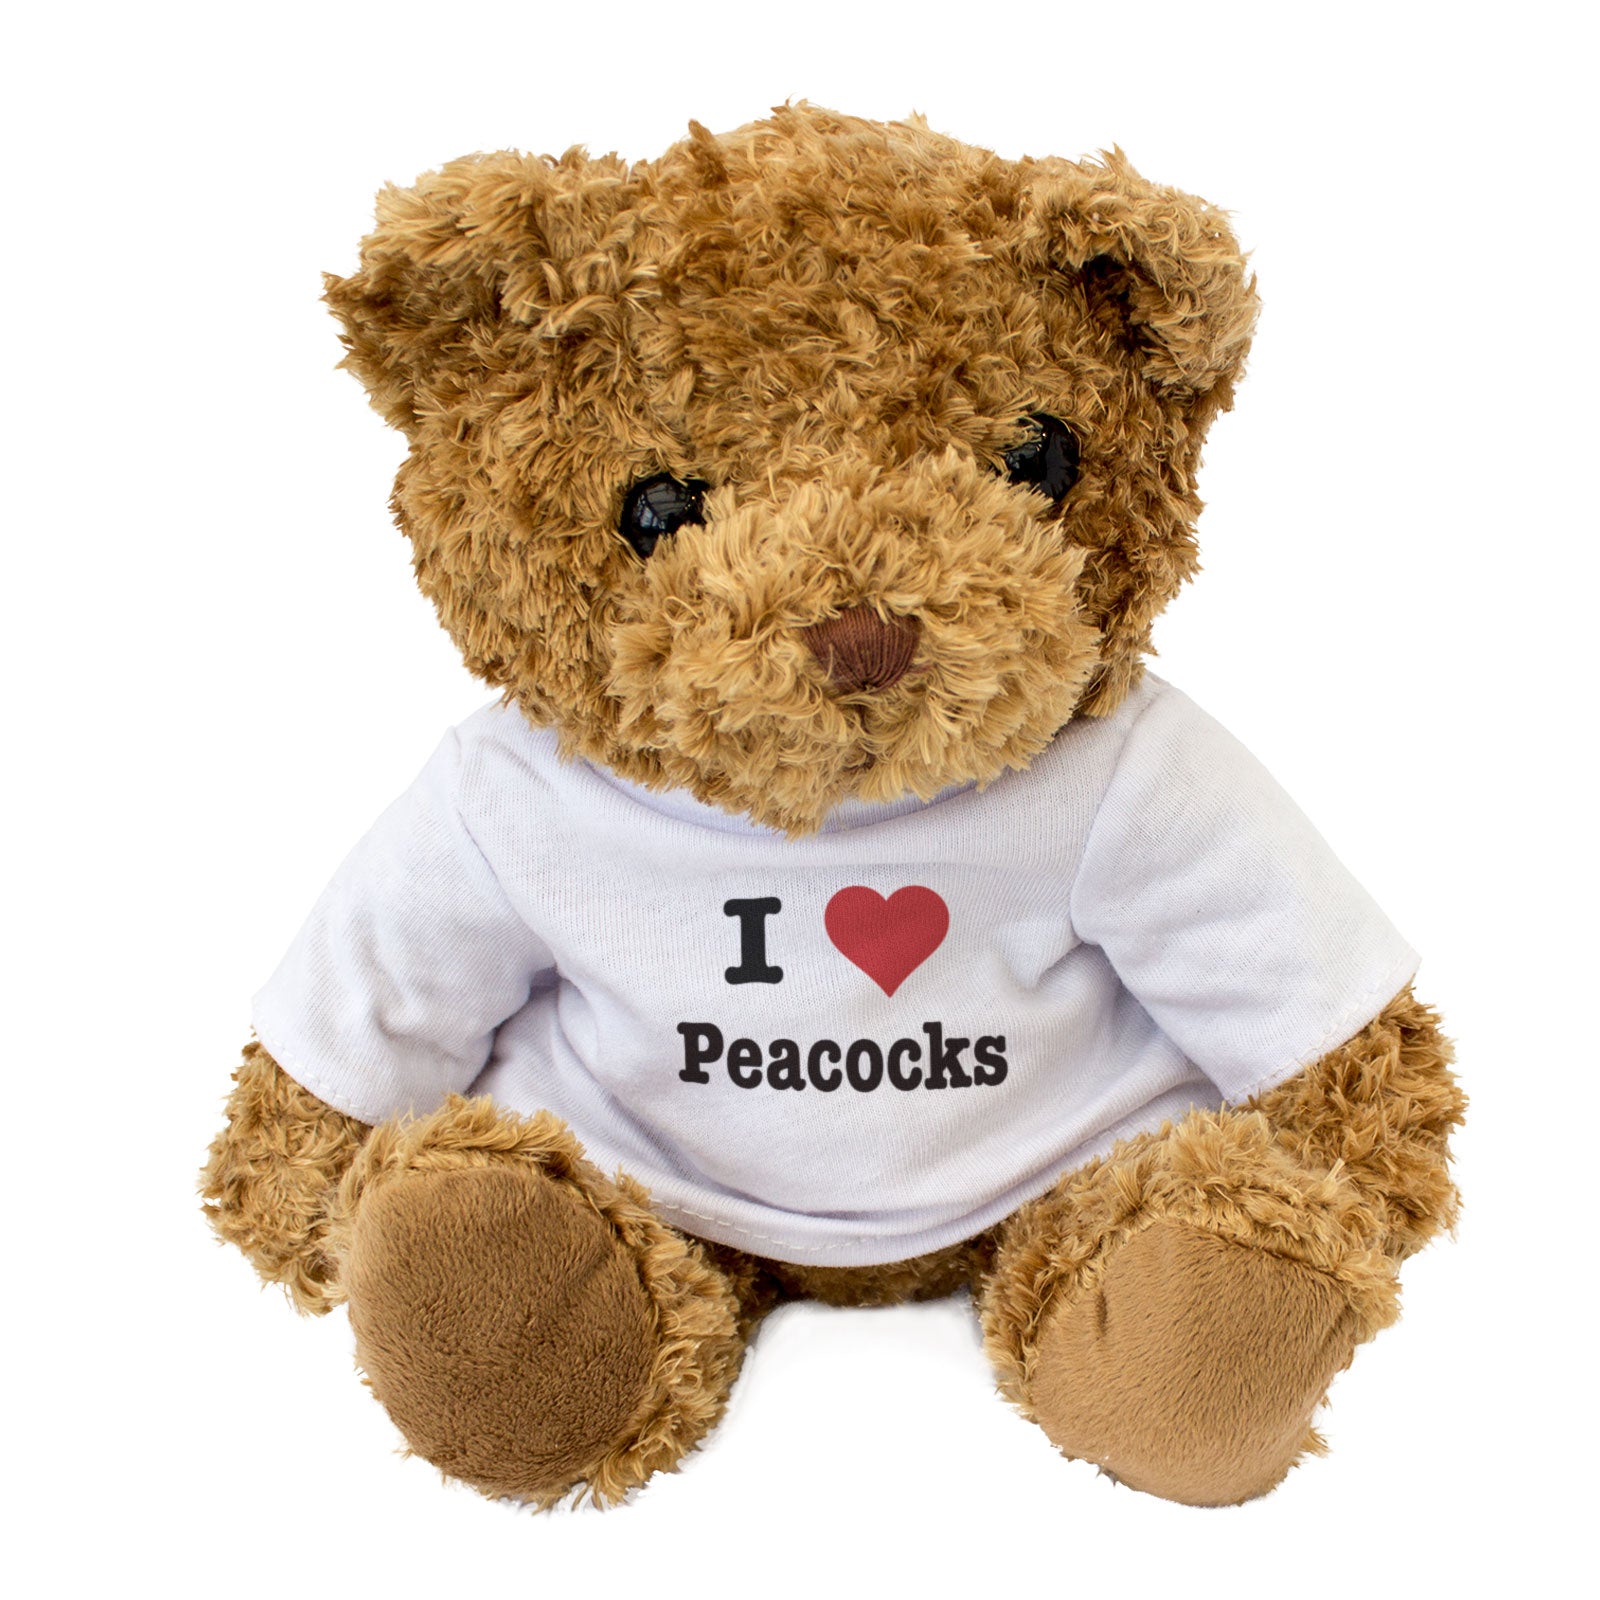 I Love Peacocks - Teddy Bear